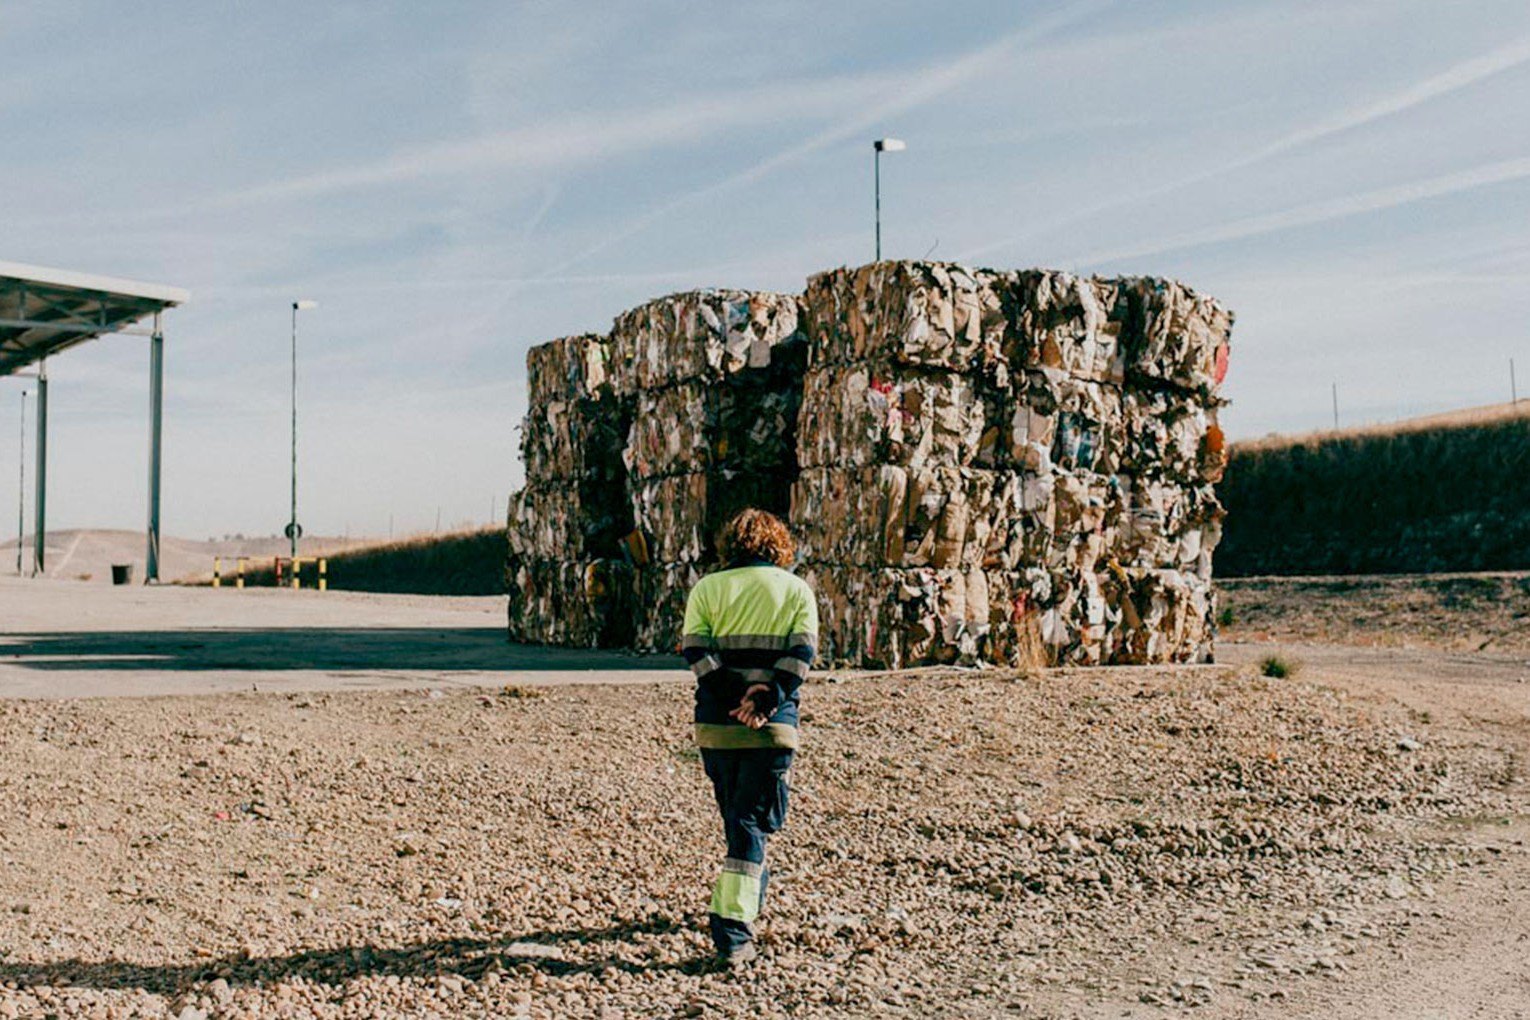 Reciclaje: dónde van los residuos que separamos | Valladolid Recicla